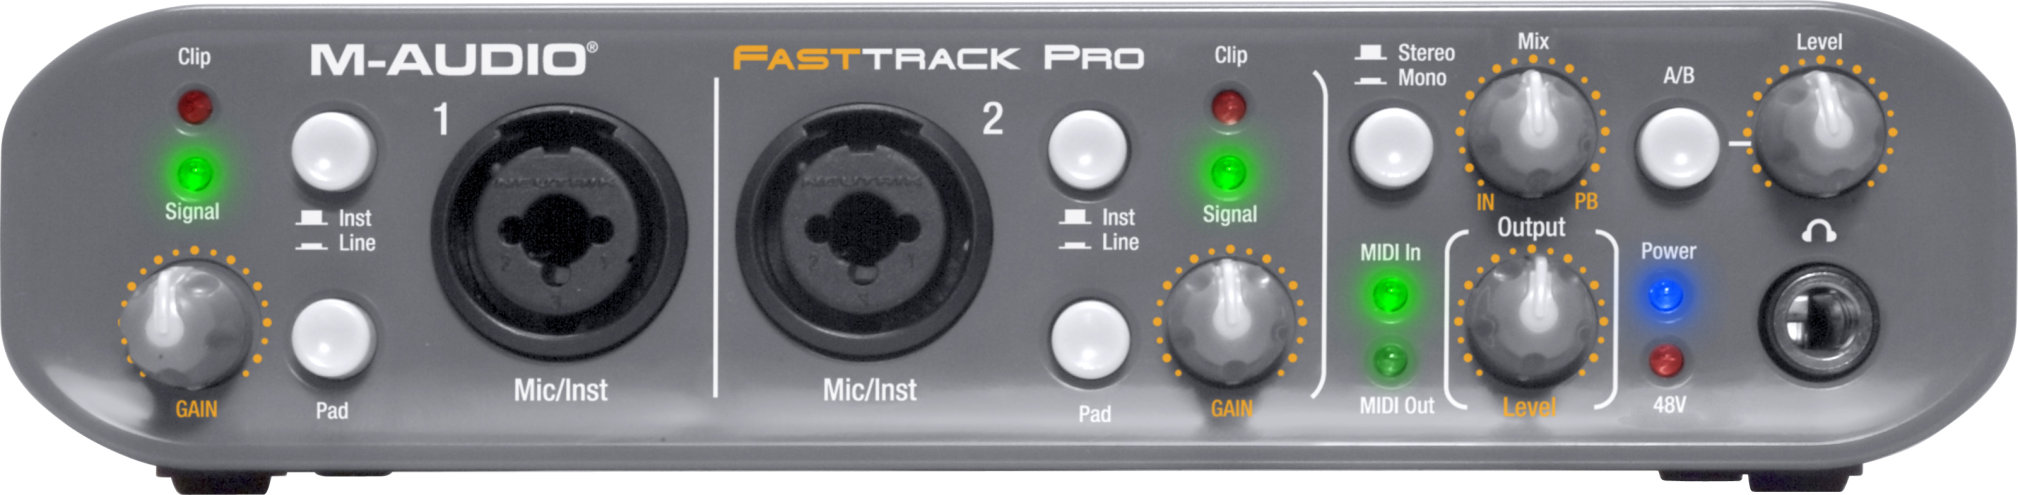 m audio fast track ultra drivers mac